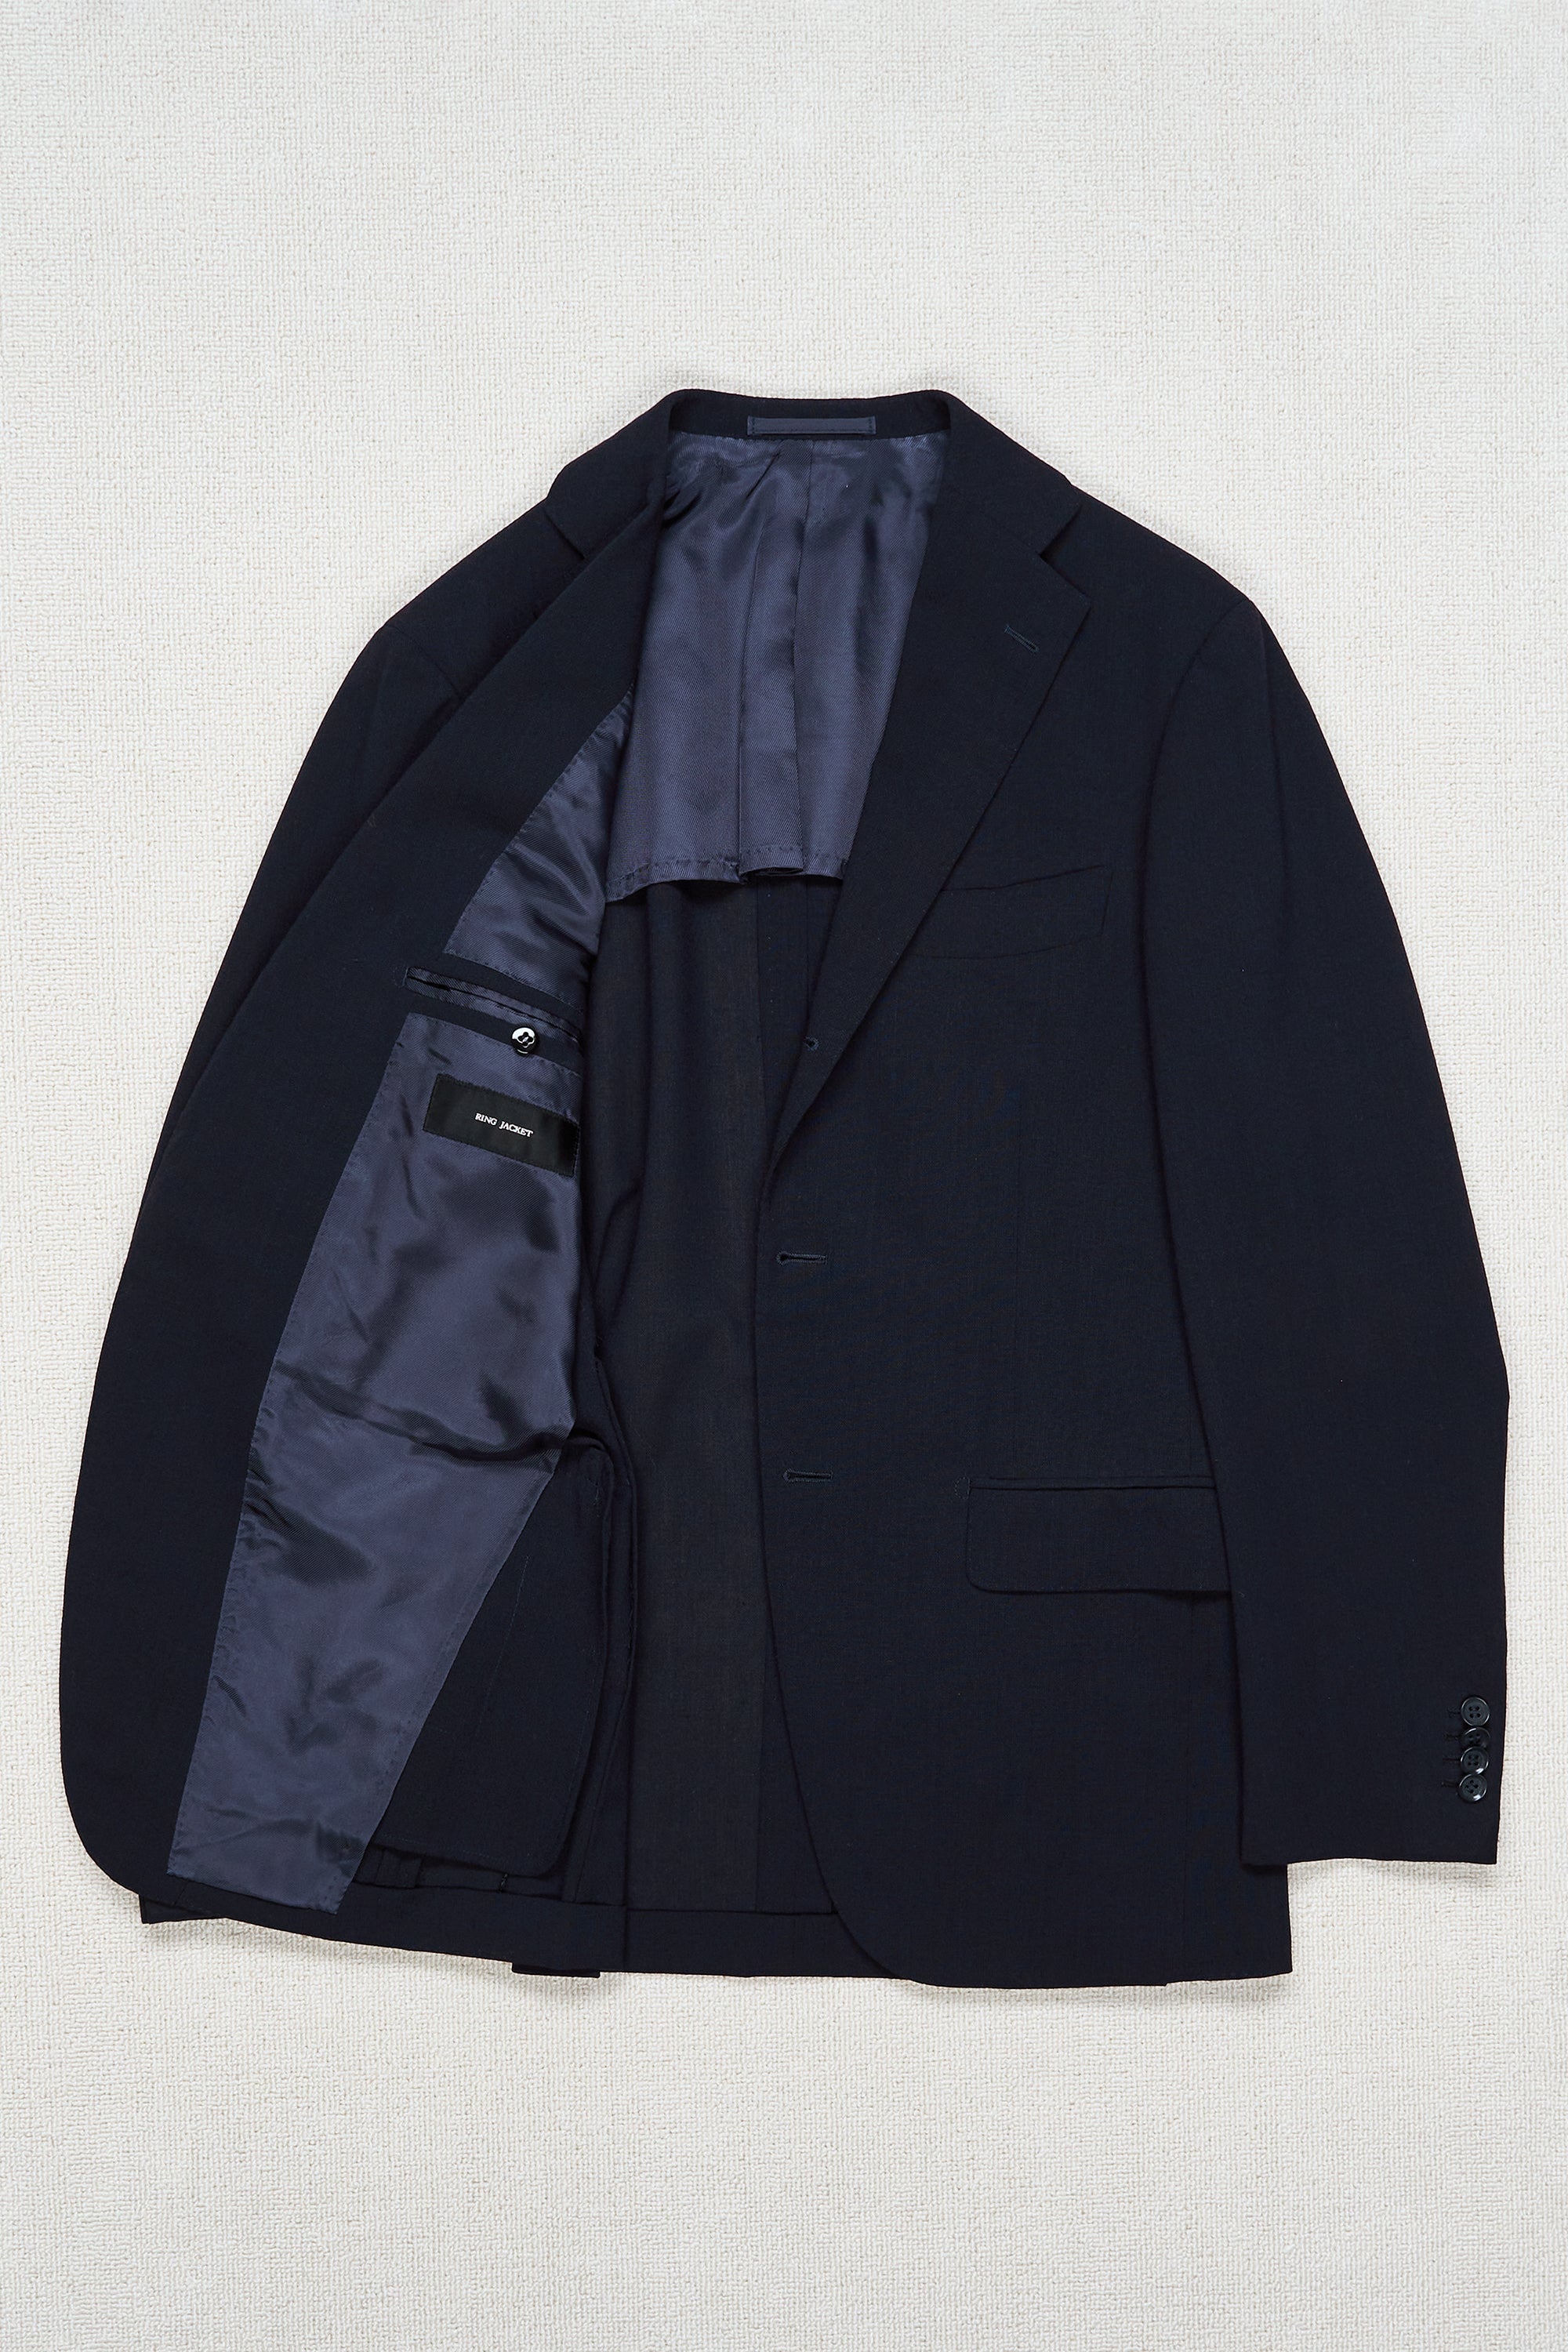 Ring Jacket 184 Navy Wool/Silk 